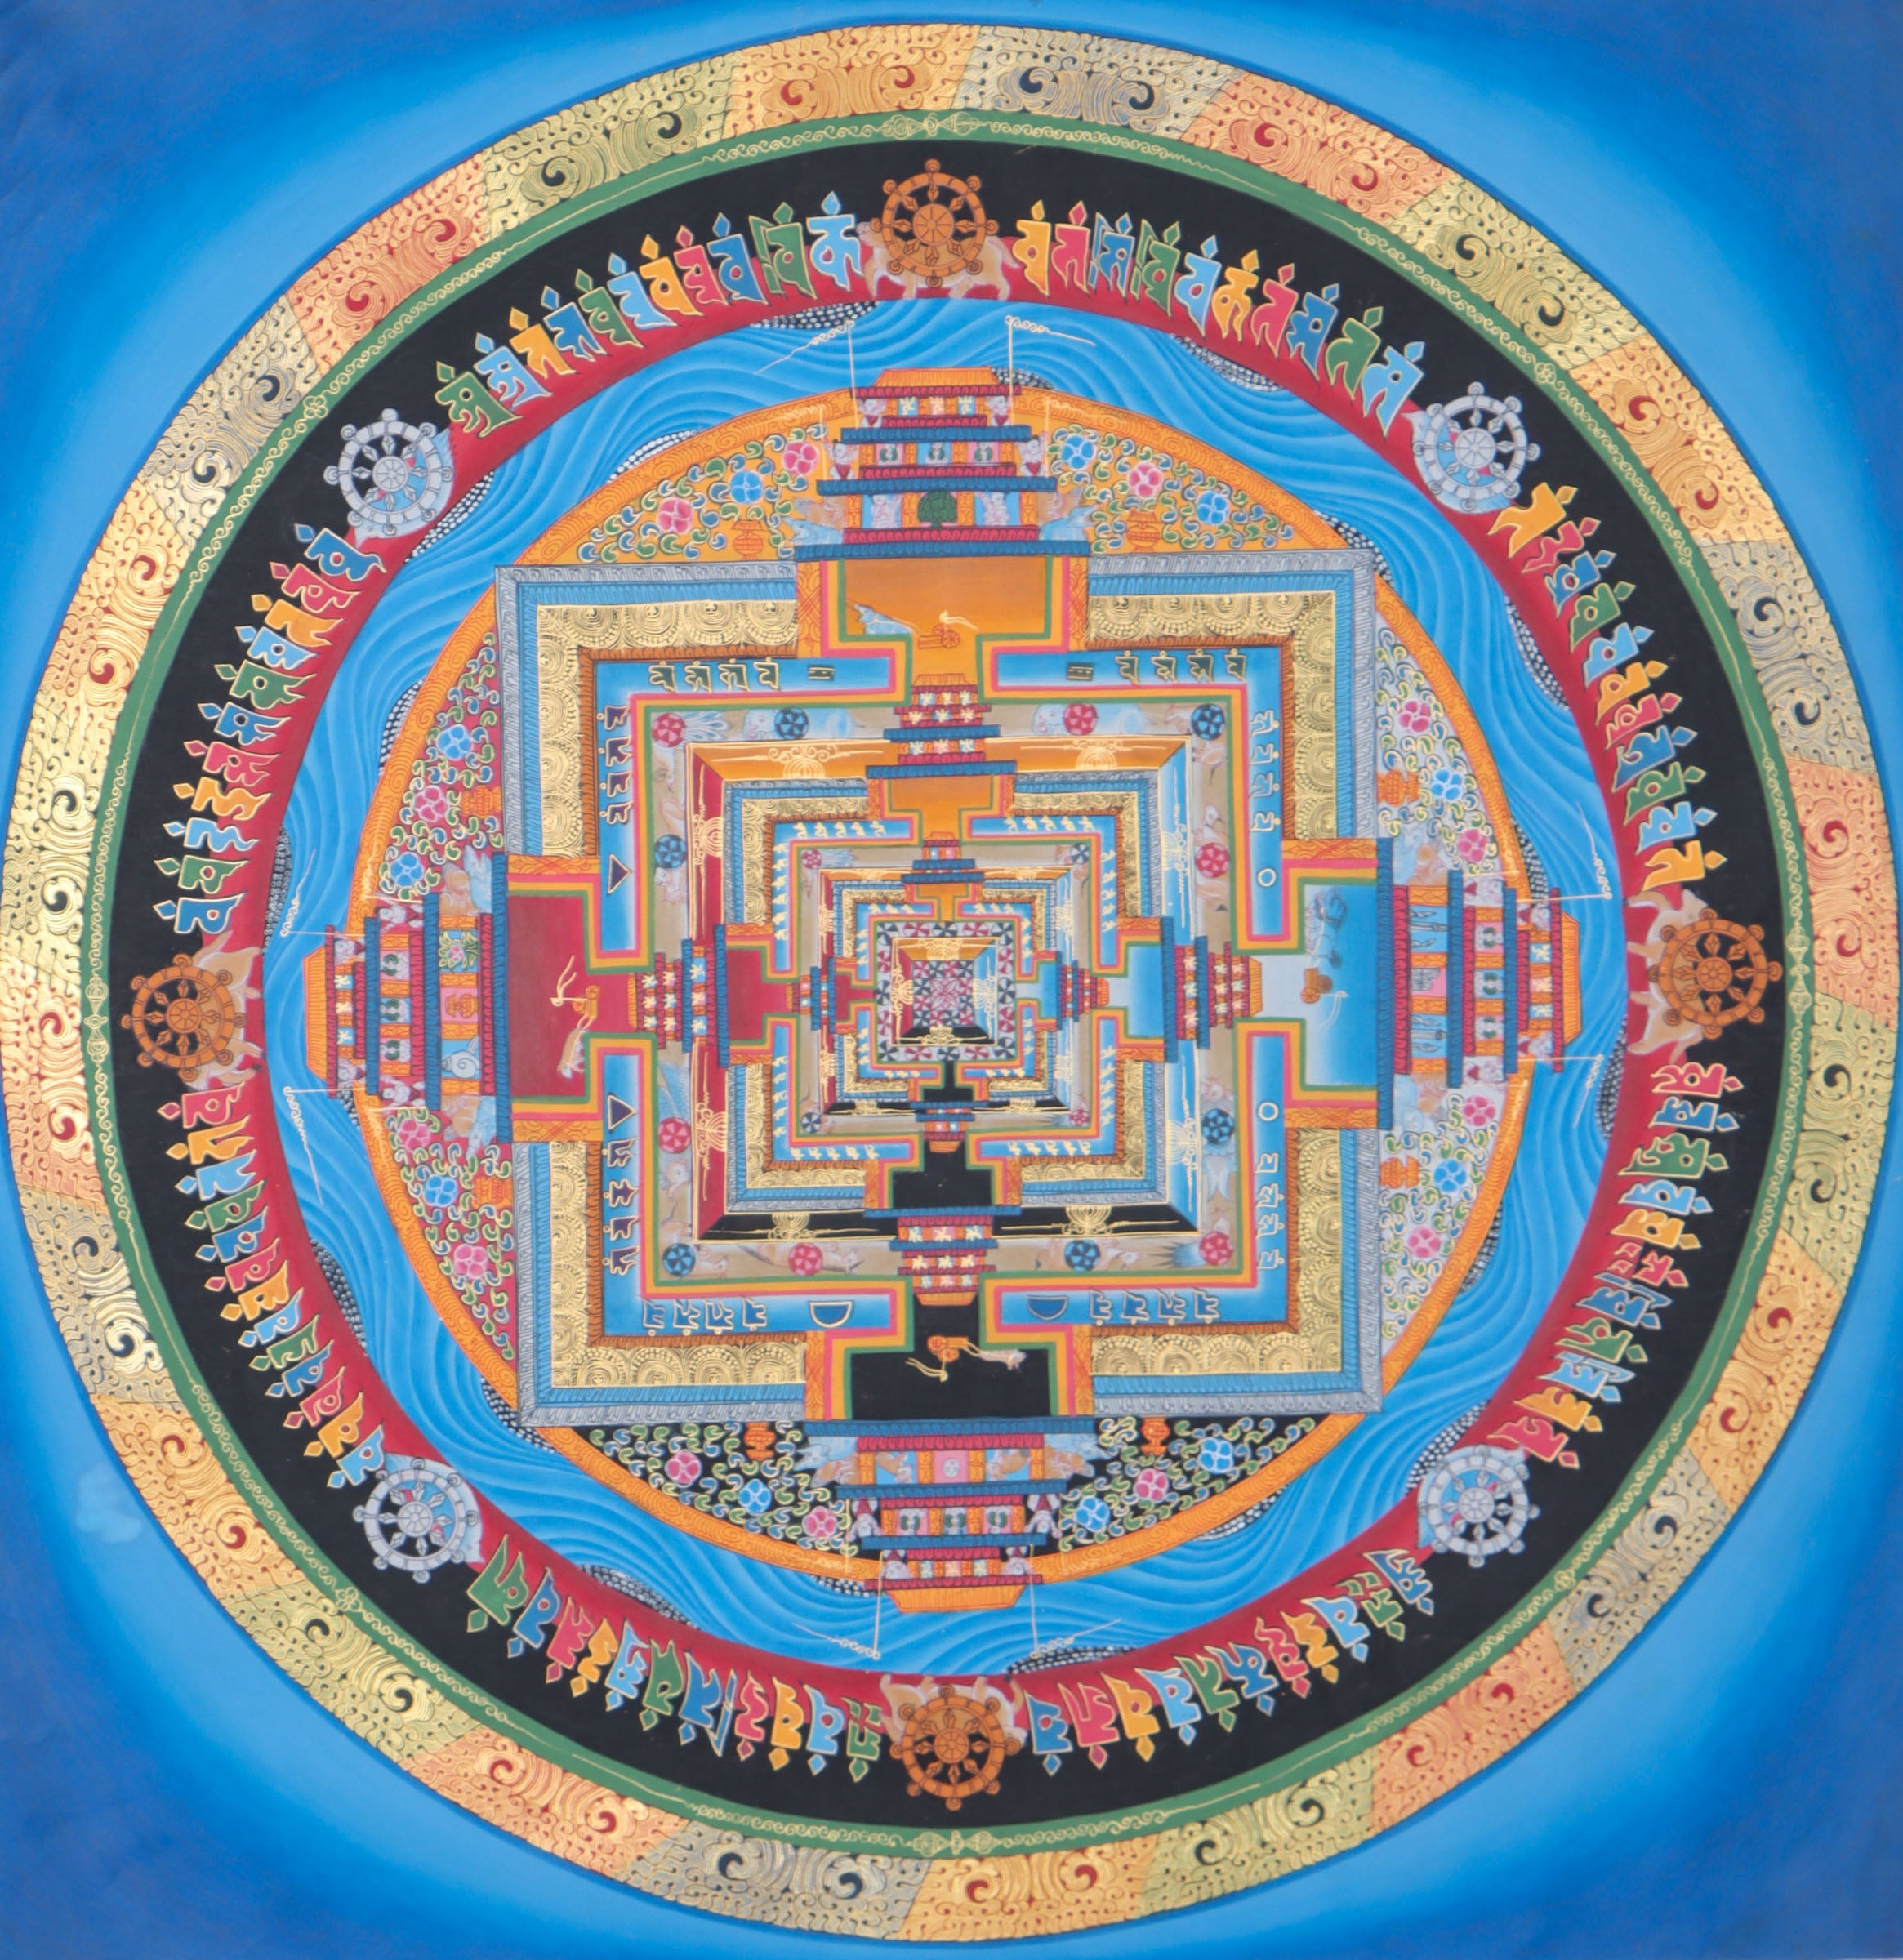 Kalachakra Mandala Thangka Painting for meditation and wall decor. 